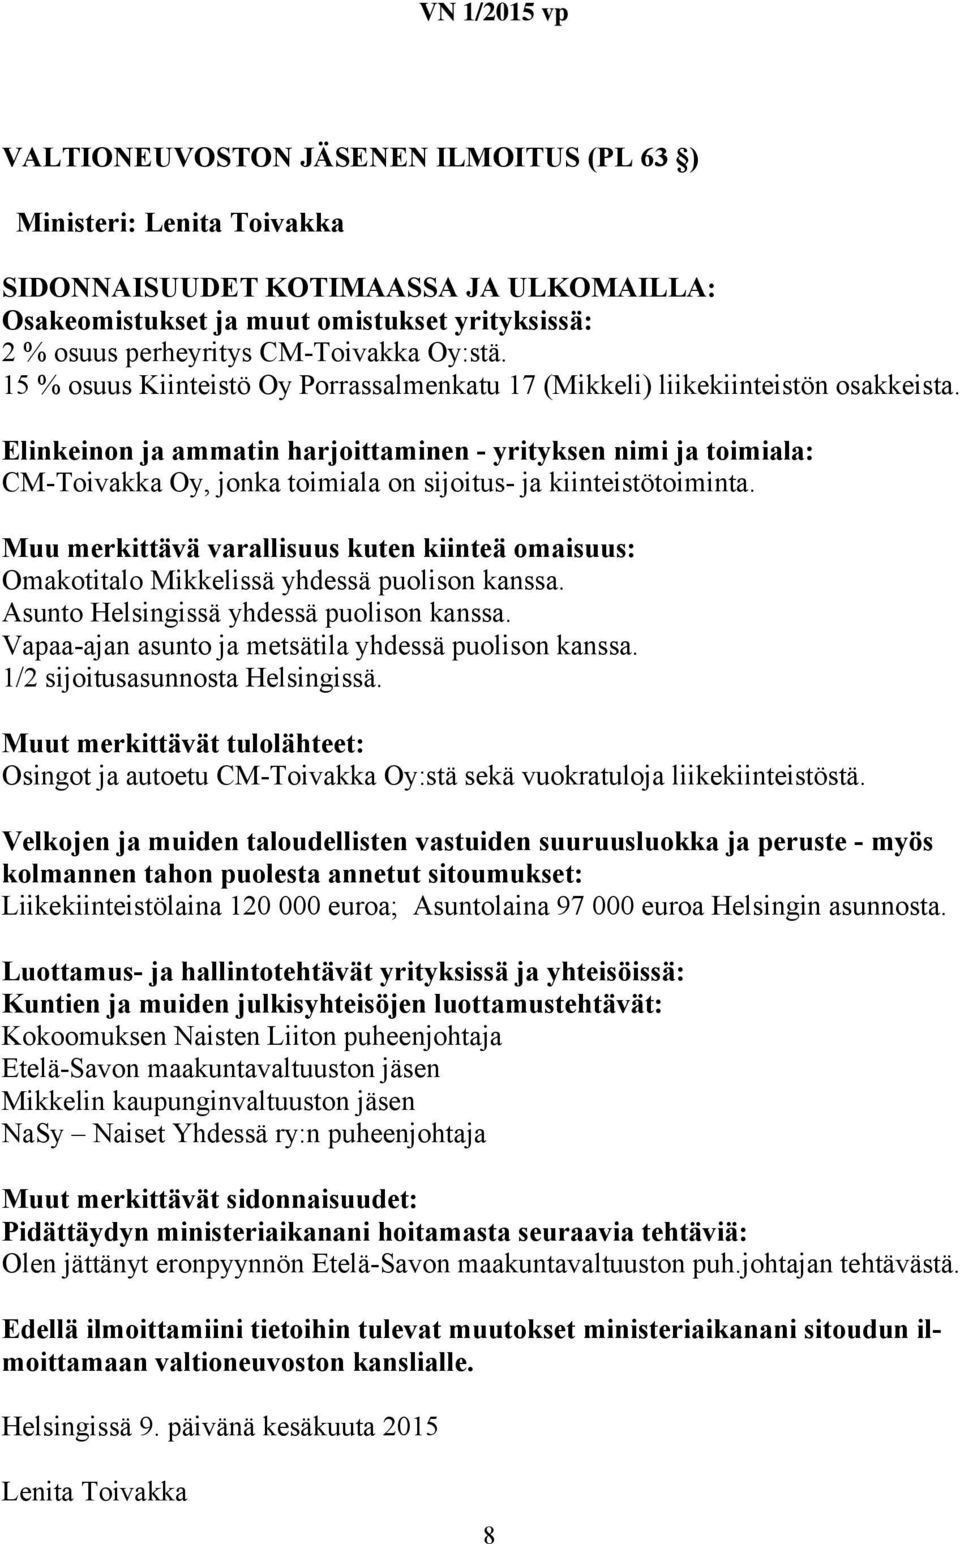 Vapaa-ajan asunto ja metsätila yhdessä puolison kanssa. 1/2 sijoitusasunnosta Helsingissä. Osingot ja autoetu CM-Toivakka Oy:stä sekä vuokratuloja liikekiinteistöstä.